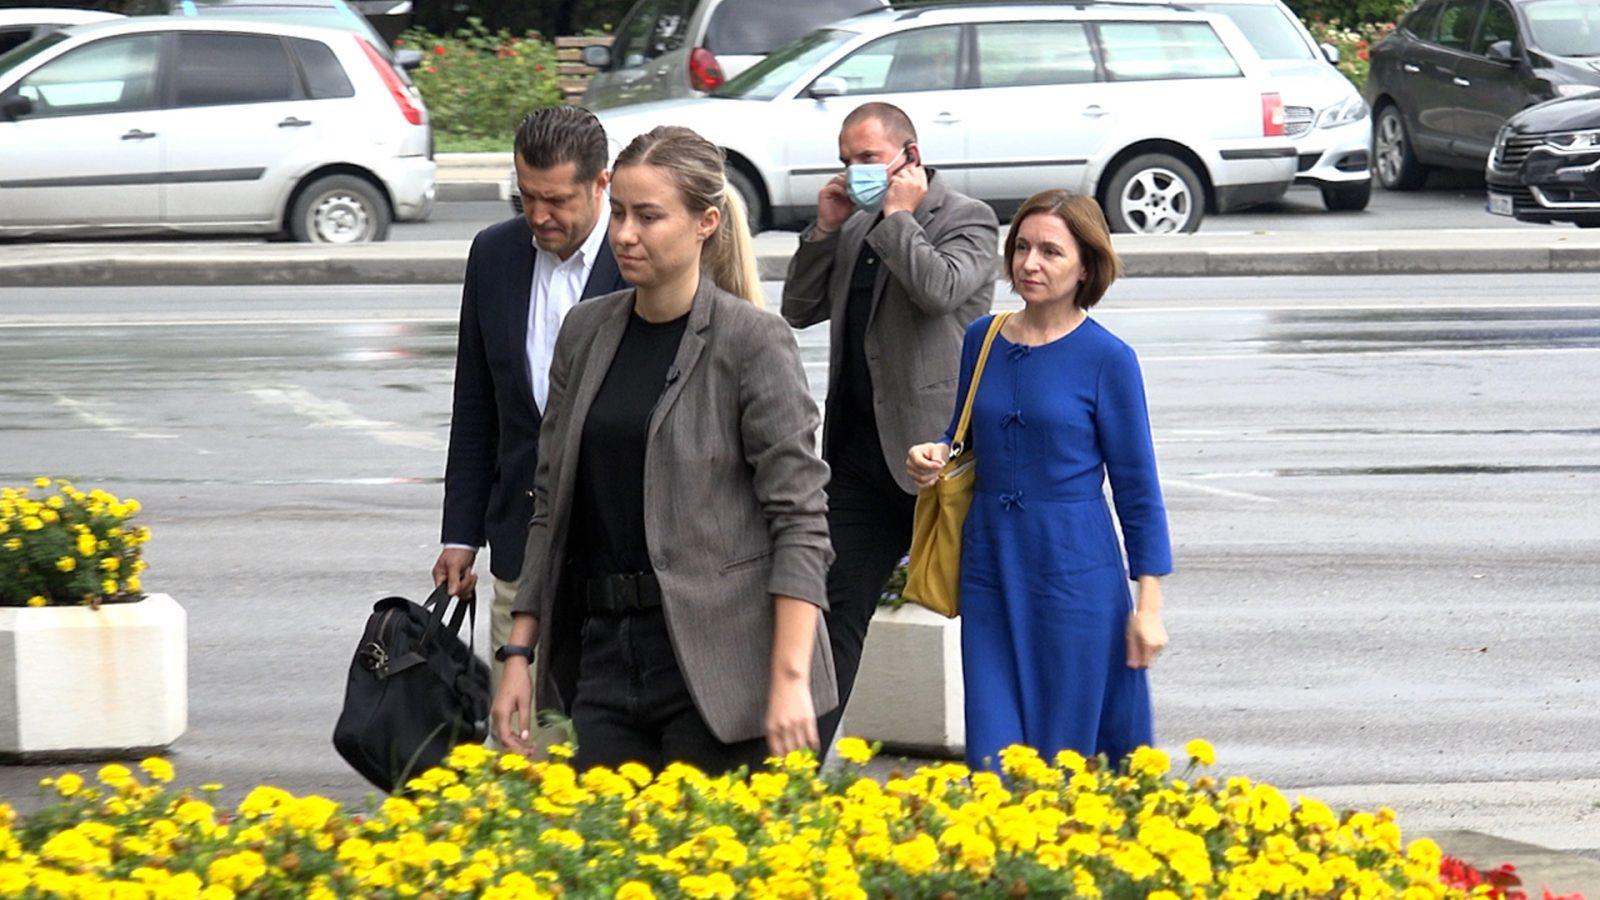 /VIDEO/ Prima vizită oficială a Maiei Sandu la Bălți. Despre ce a discutat Președintele cu autoritățile locale